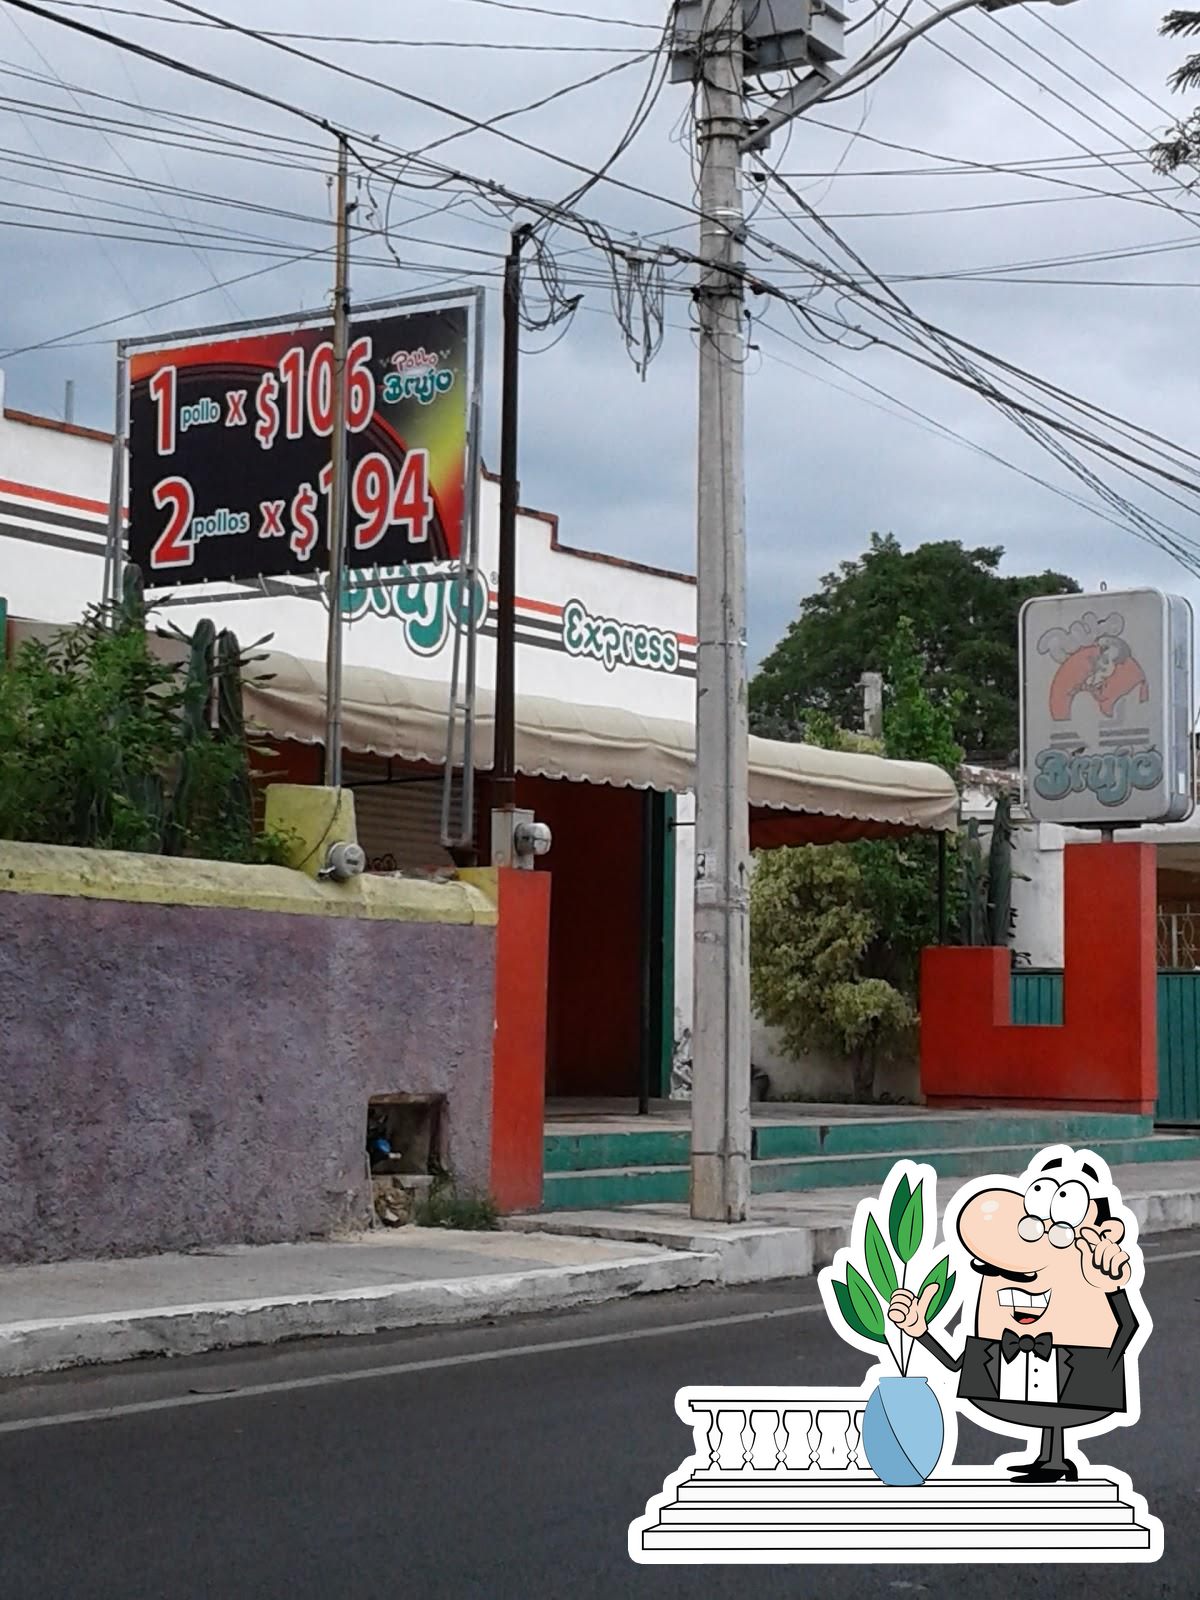 Restaurante Pollo Brujo Express Cocos, Merida, Calle 60 Num. 745 Bis x 95 y  97 - Opiniones del restaurante